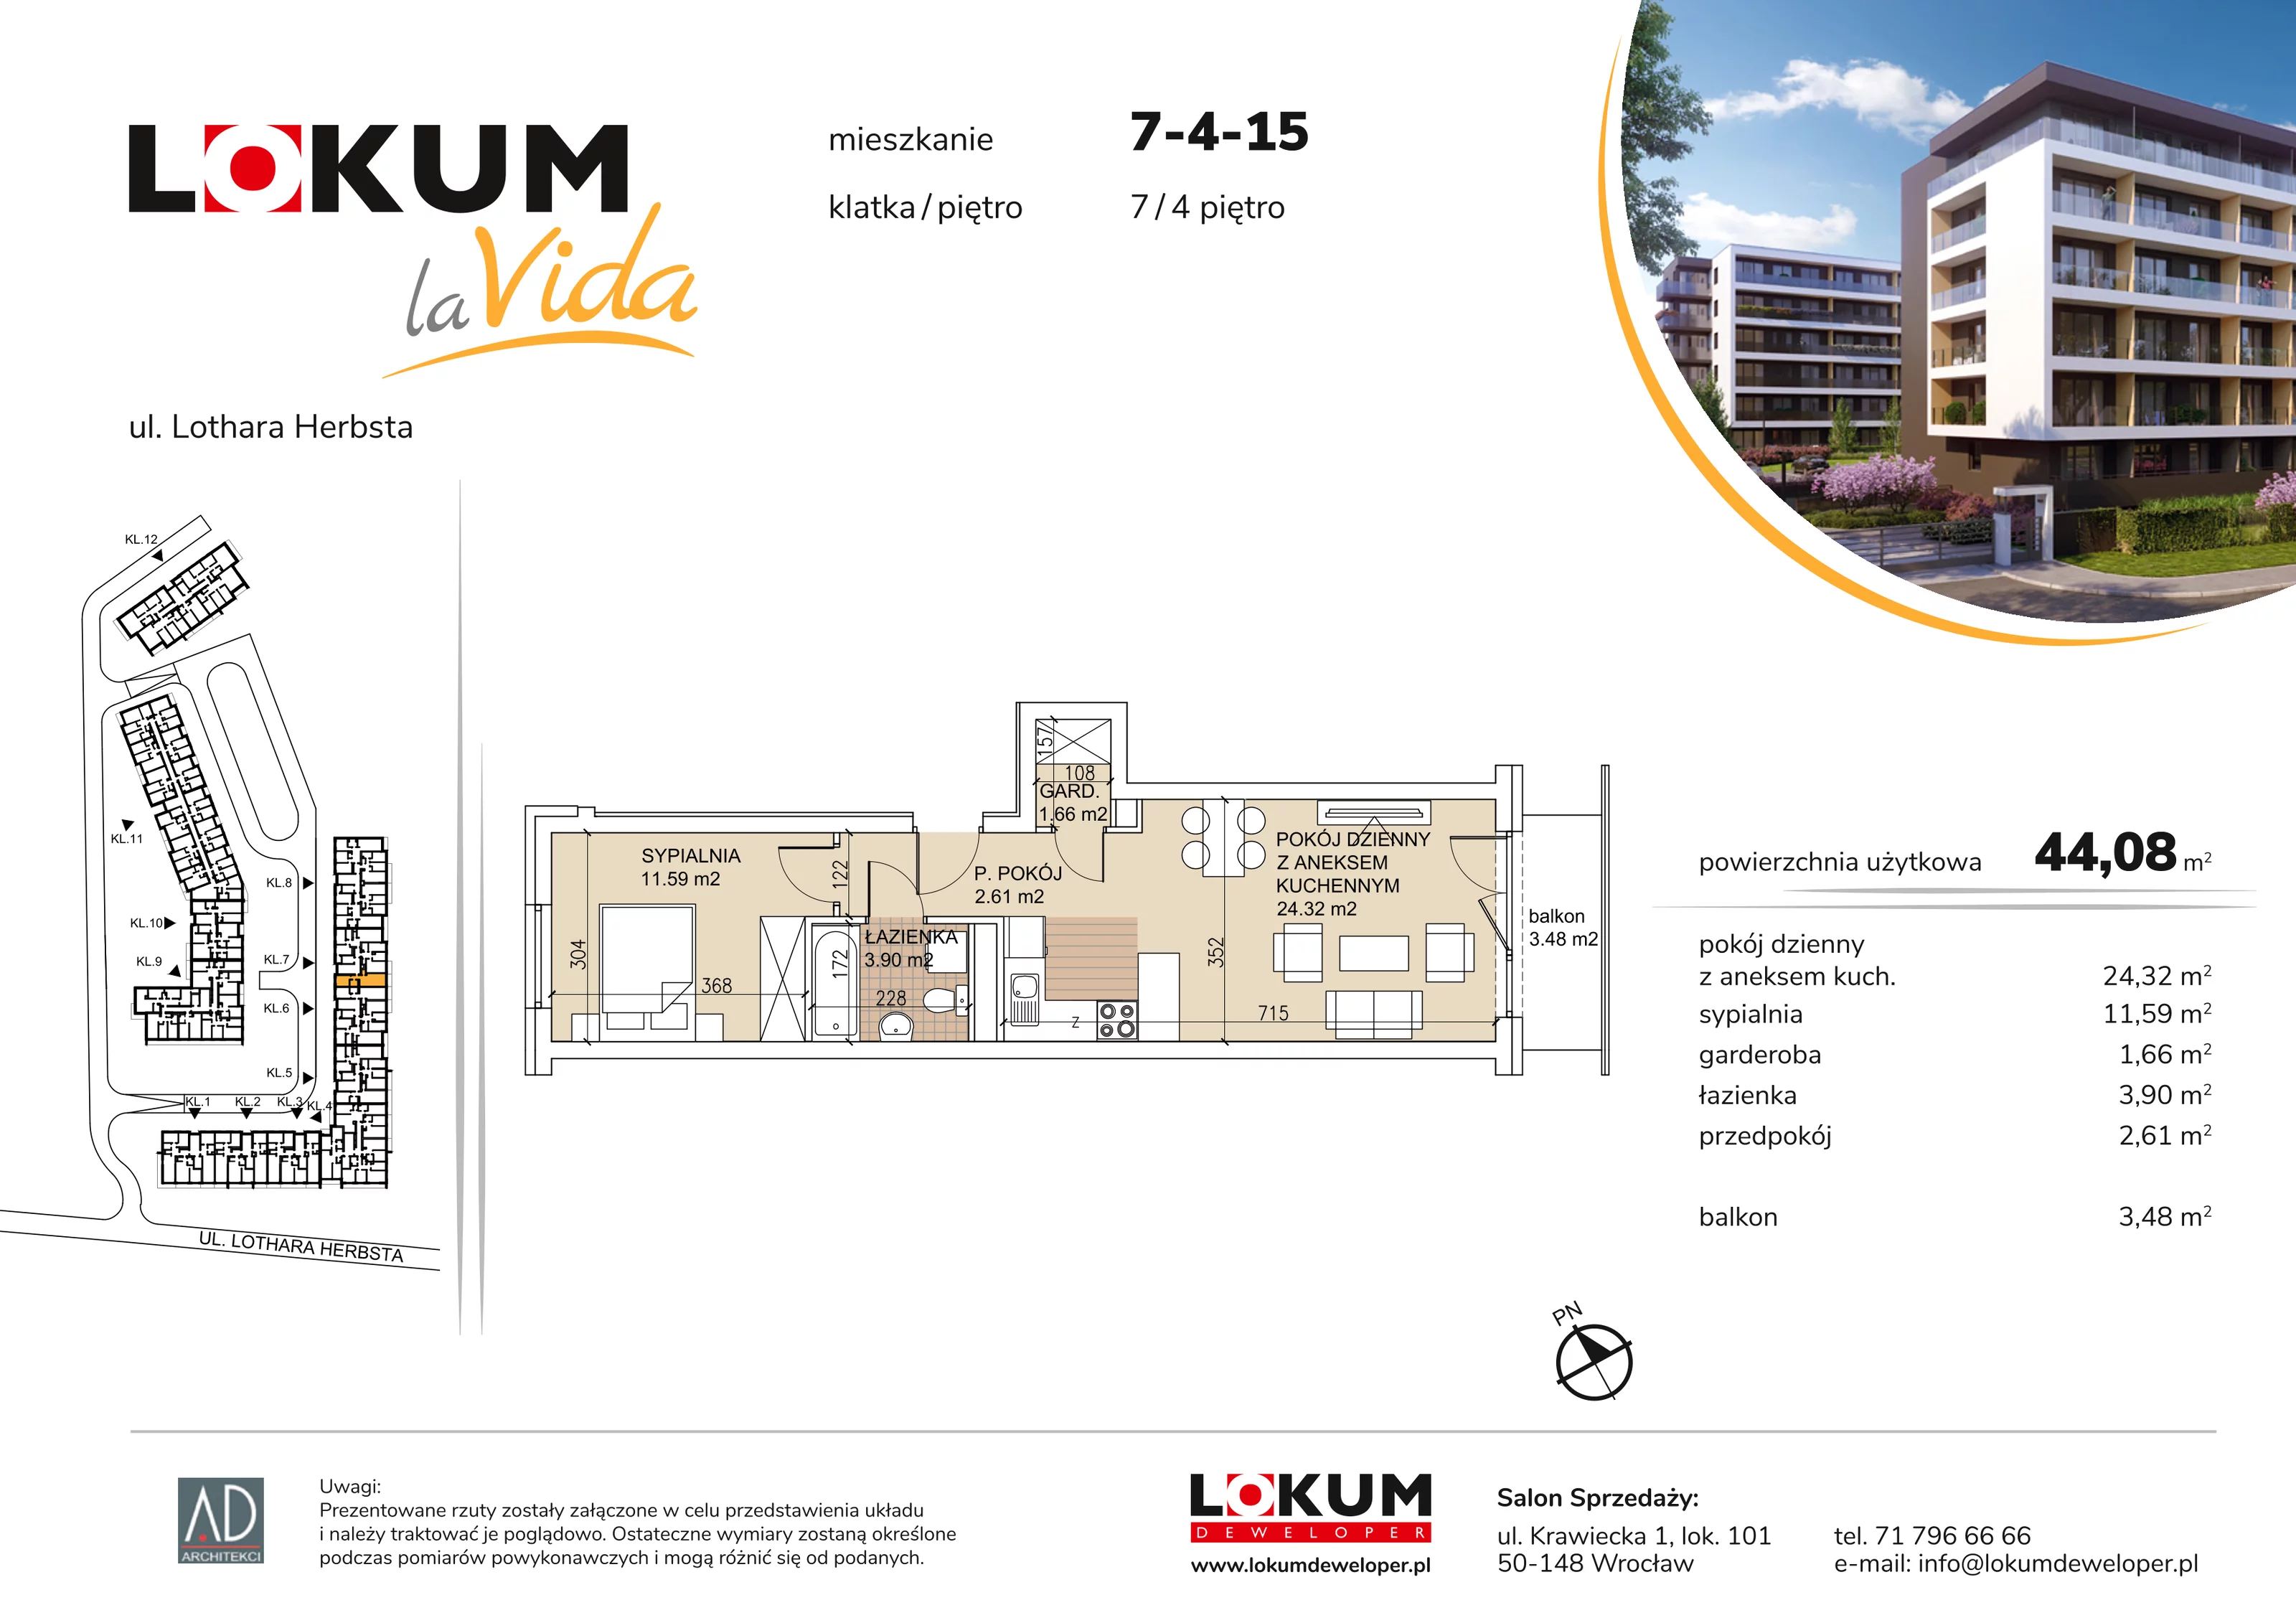 Mieszkanie 44,08 m², piętro 4, oferta nr 7-4-15, Lokum la Vida, Wrocław, Sołtysowice, ul. Lothara Herbsta